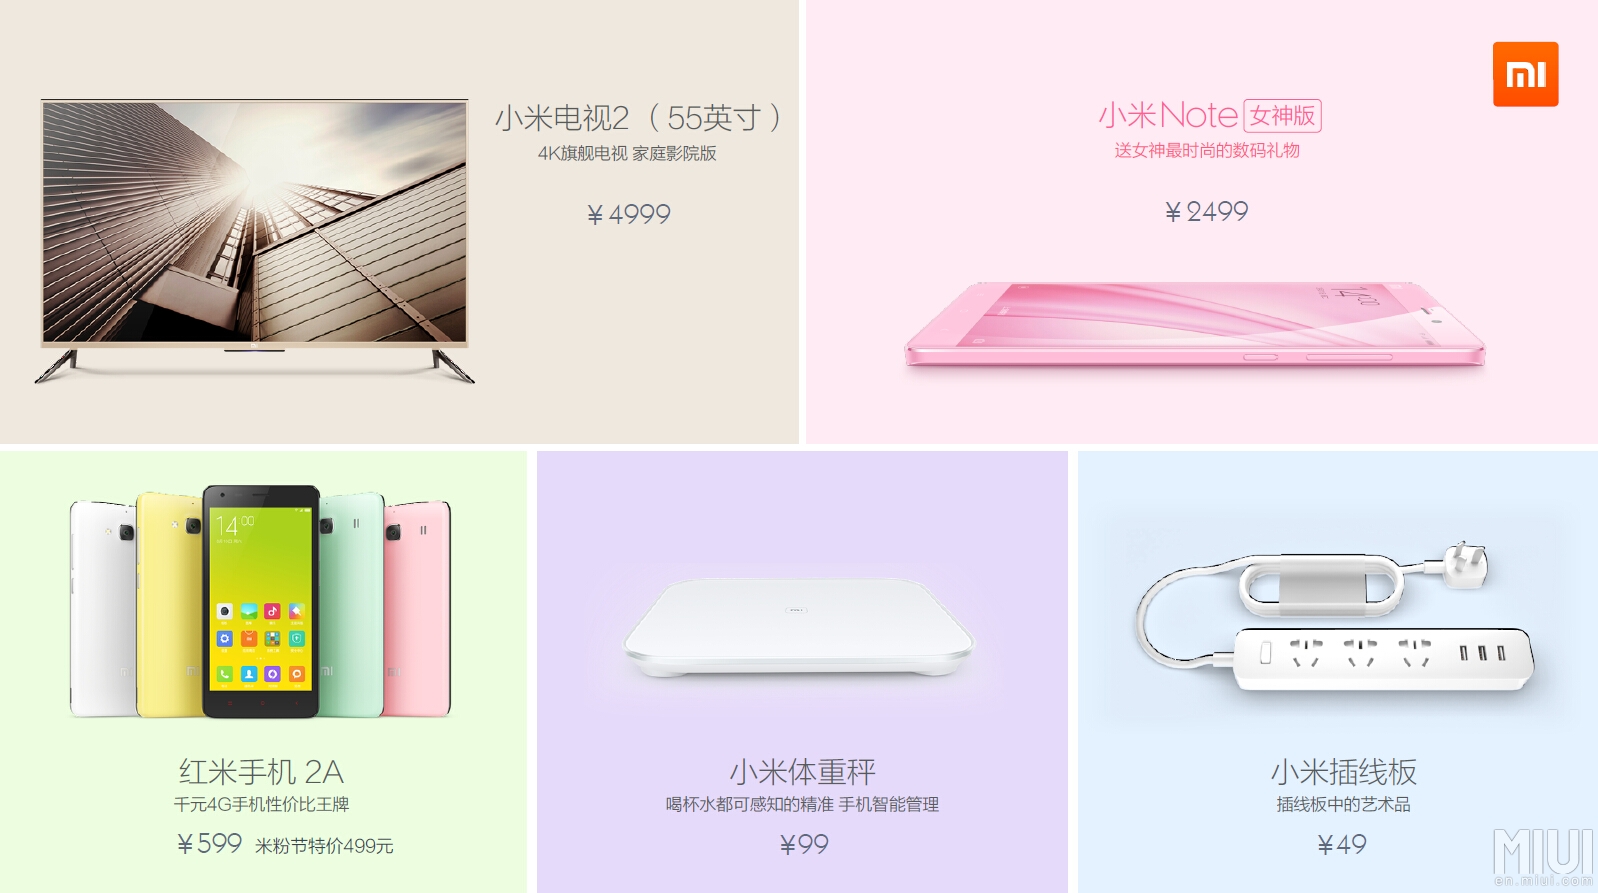 5 новинок бренда Xiaomi поступят в продажу в Китае уже в следующем месяце по  анонсированным ценам в юанях